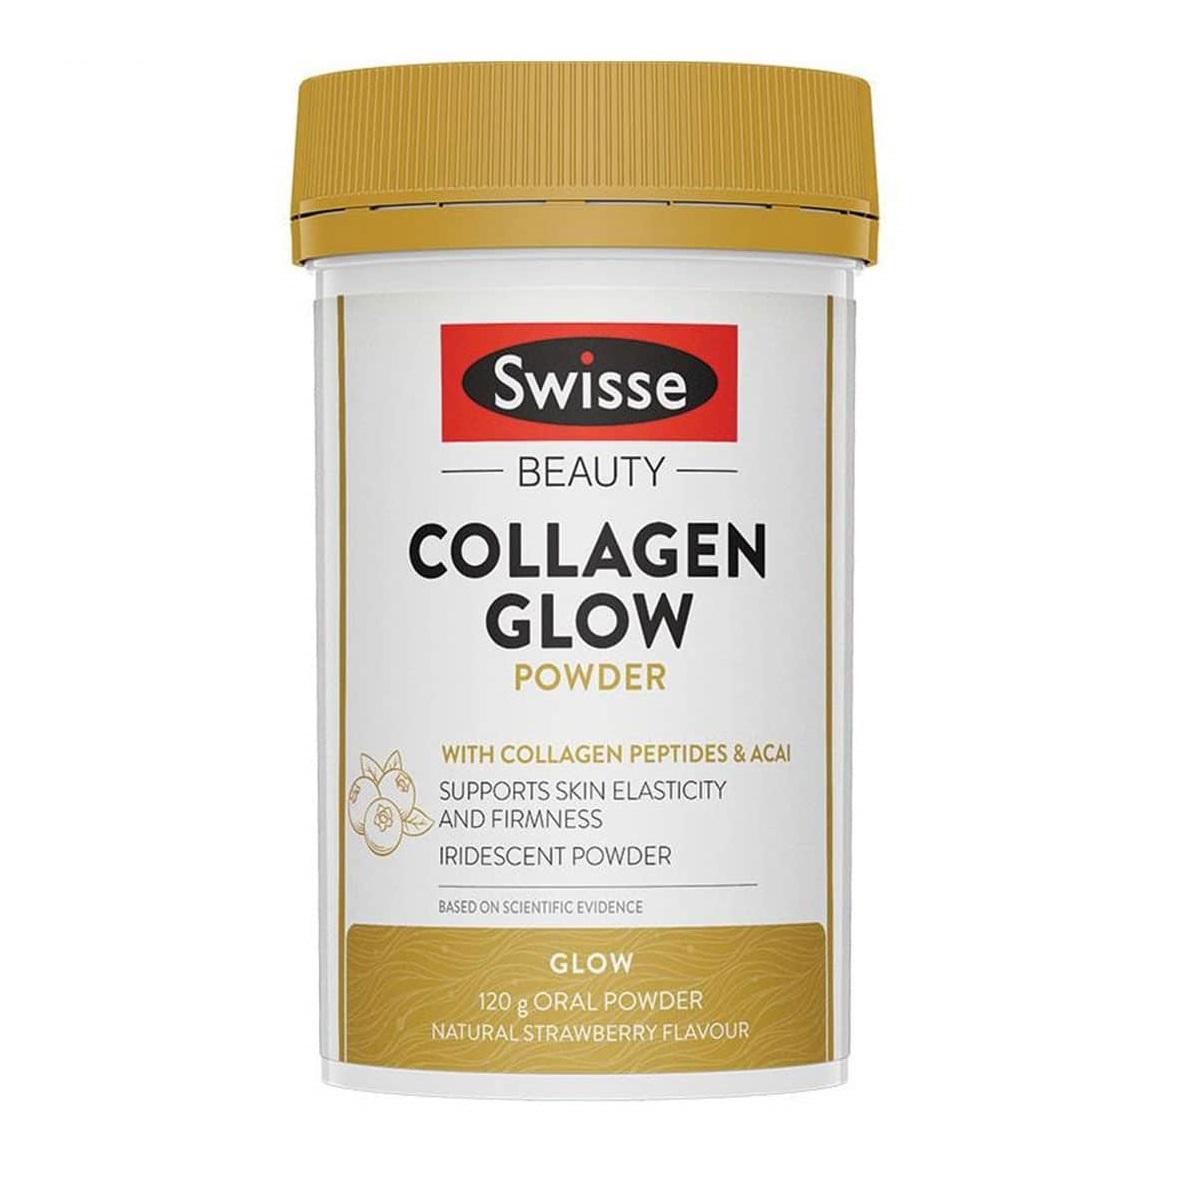 Swisse Beauty Collagen Glow